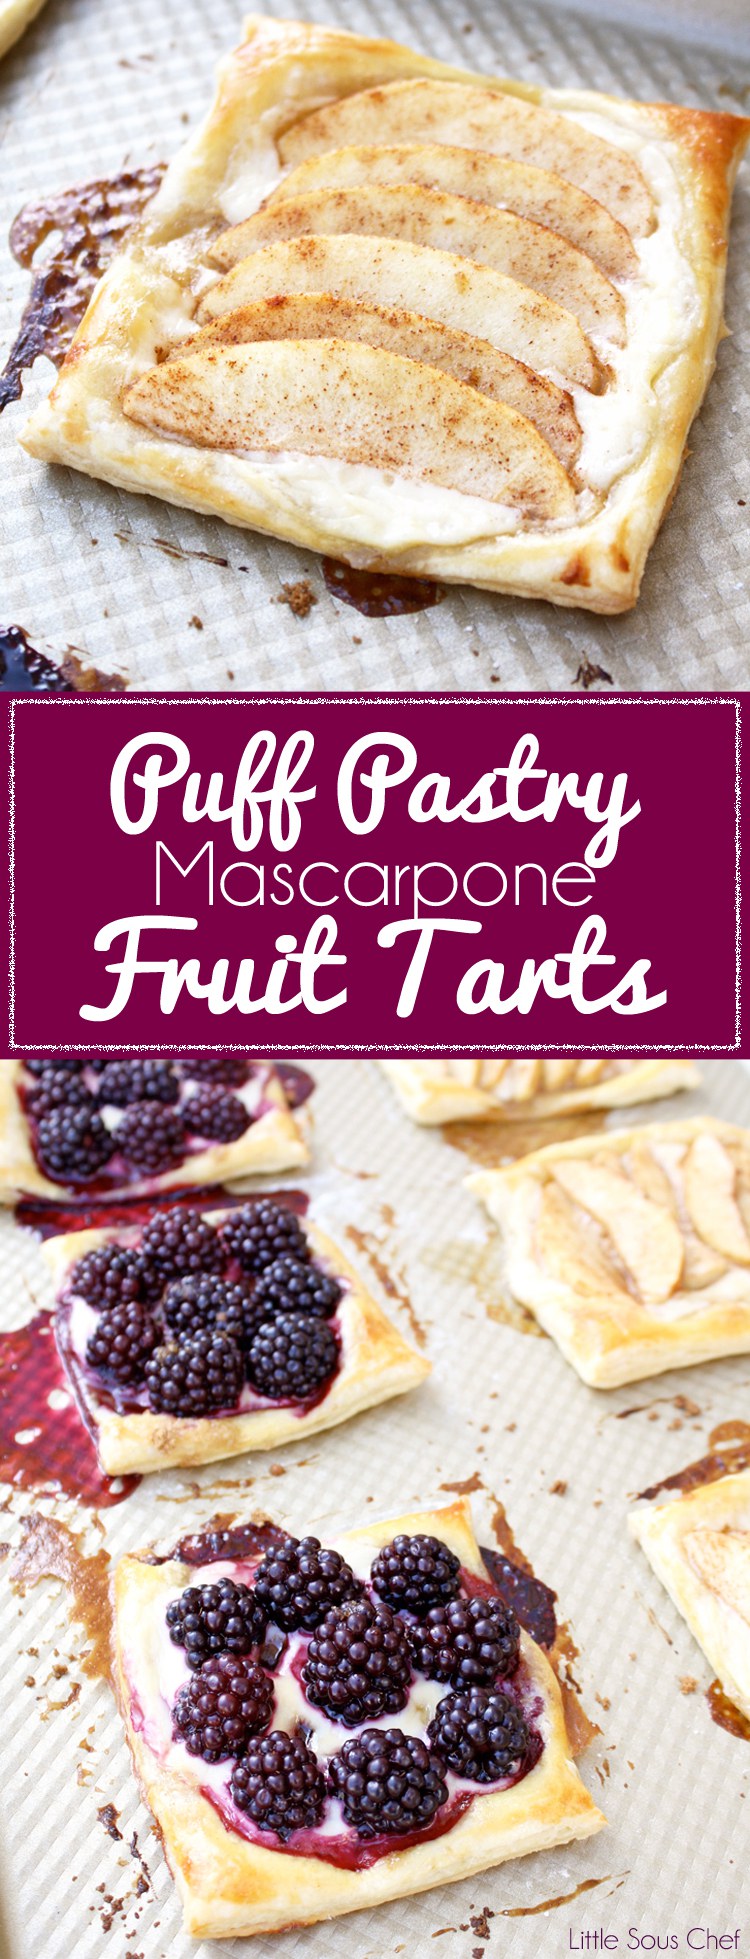 Mascarpone Fruit Tarts